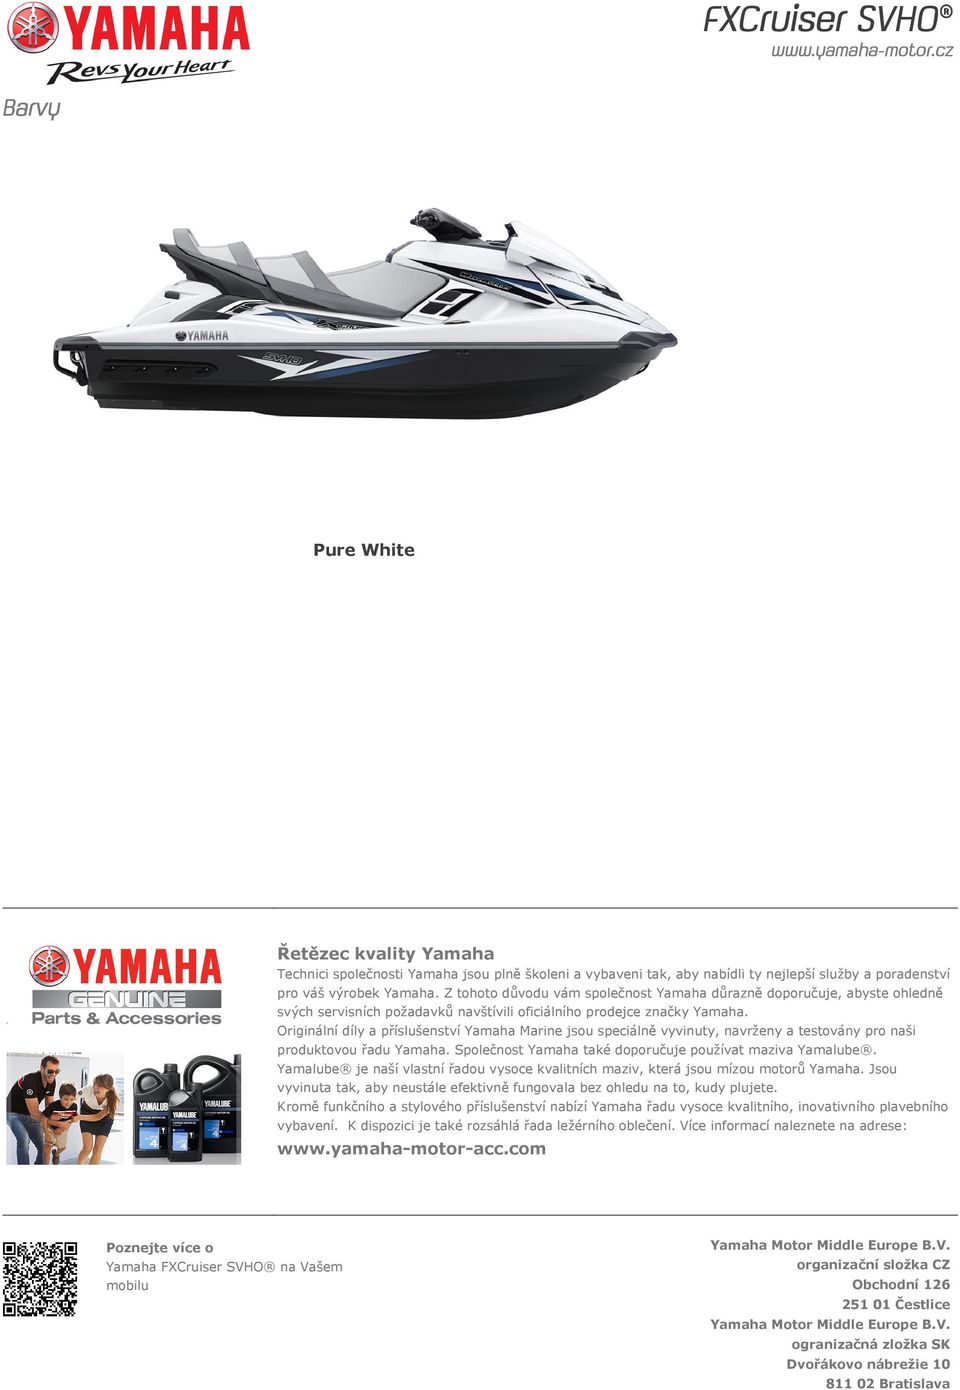 Originální díly a příslušenství Yamaha Marine jsou speciálně vyvinuty, navrženy a testovány pro naši produktovou řadu Yamaha. Společnost Yamaha také doporučuje používat maziva Yamalube.